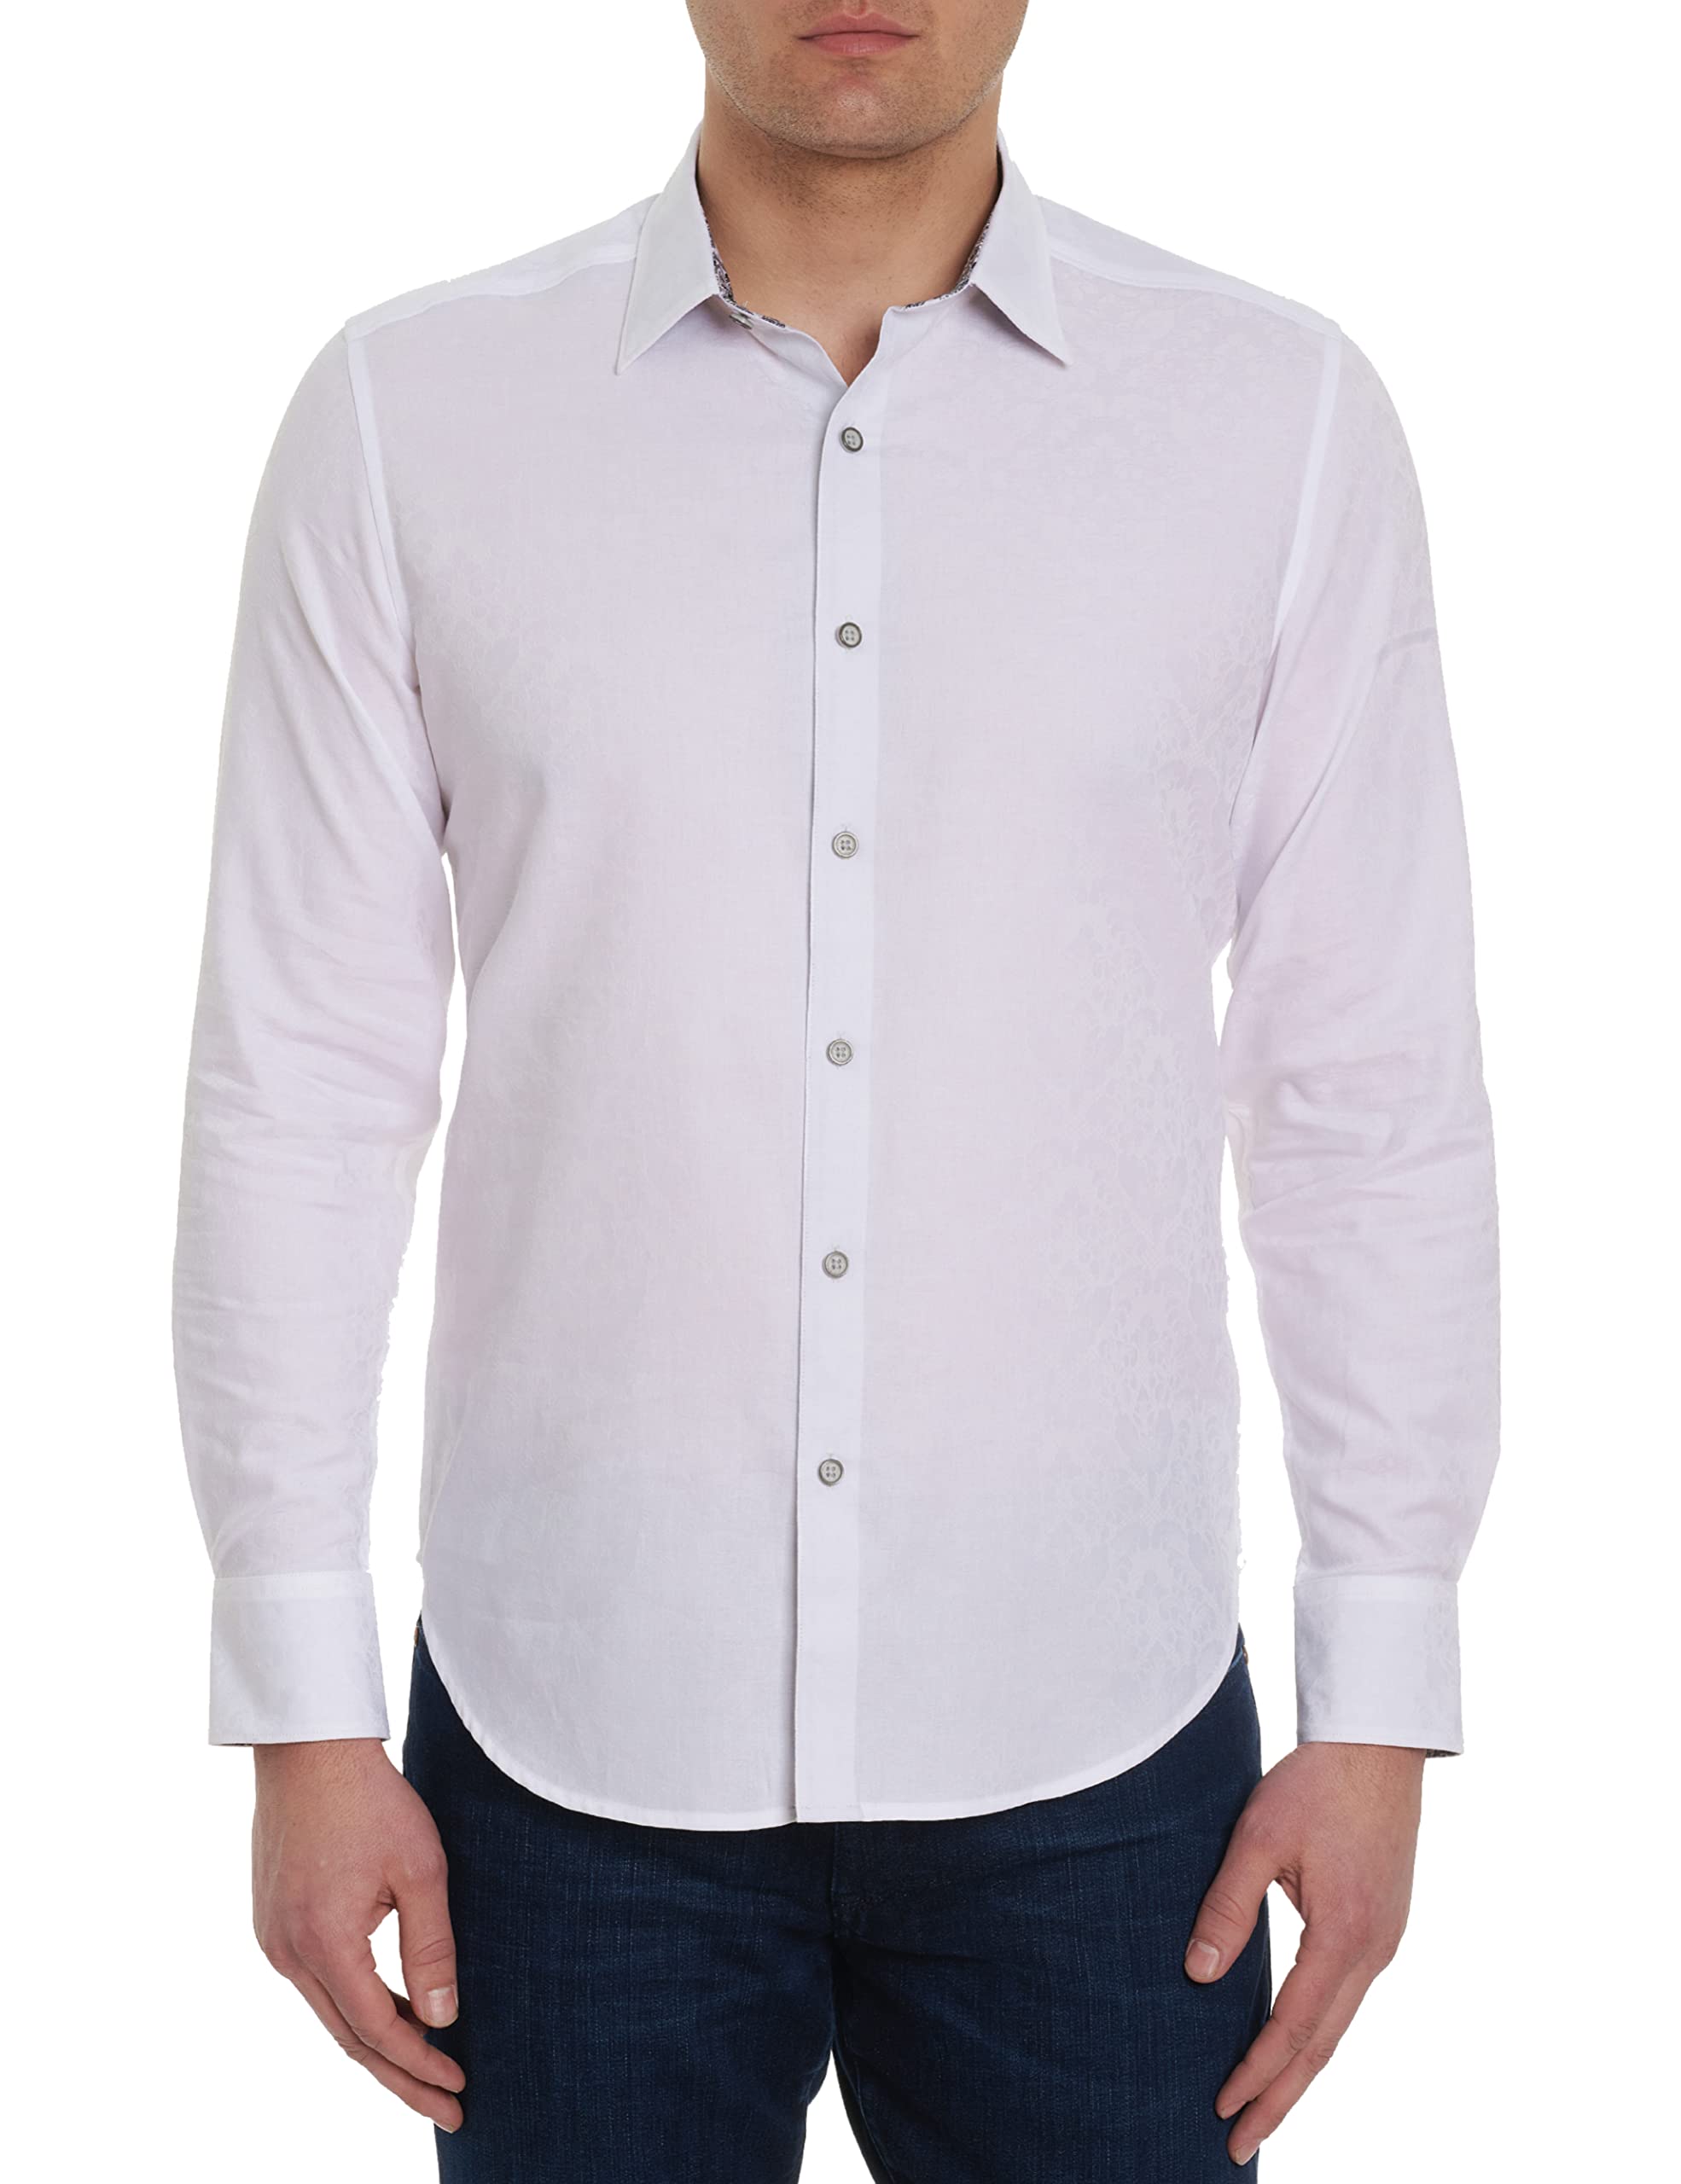 Robert Graham Men's Bayview, Cotton Button-up Long-Sleeve Shirt